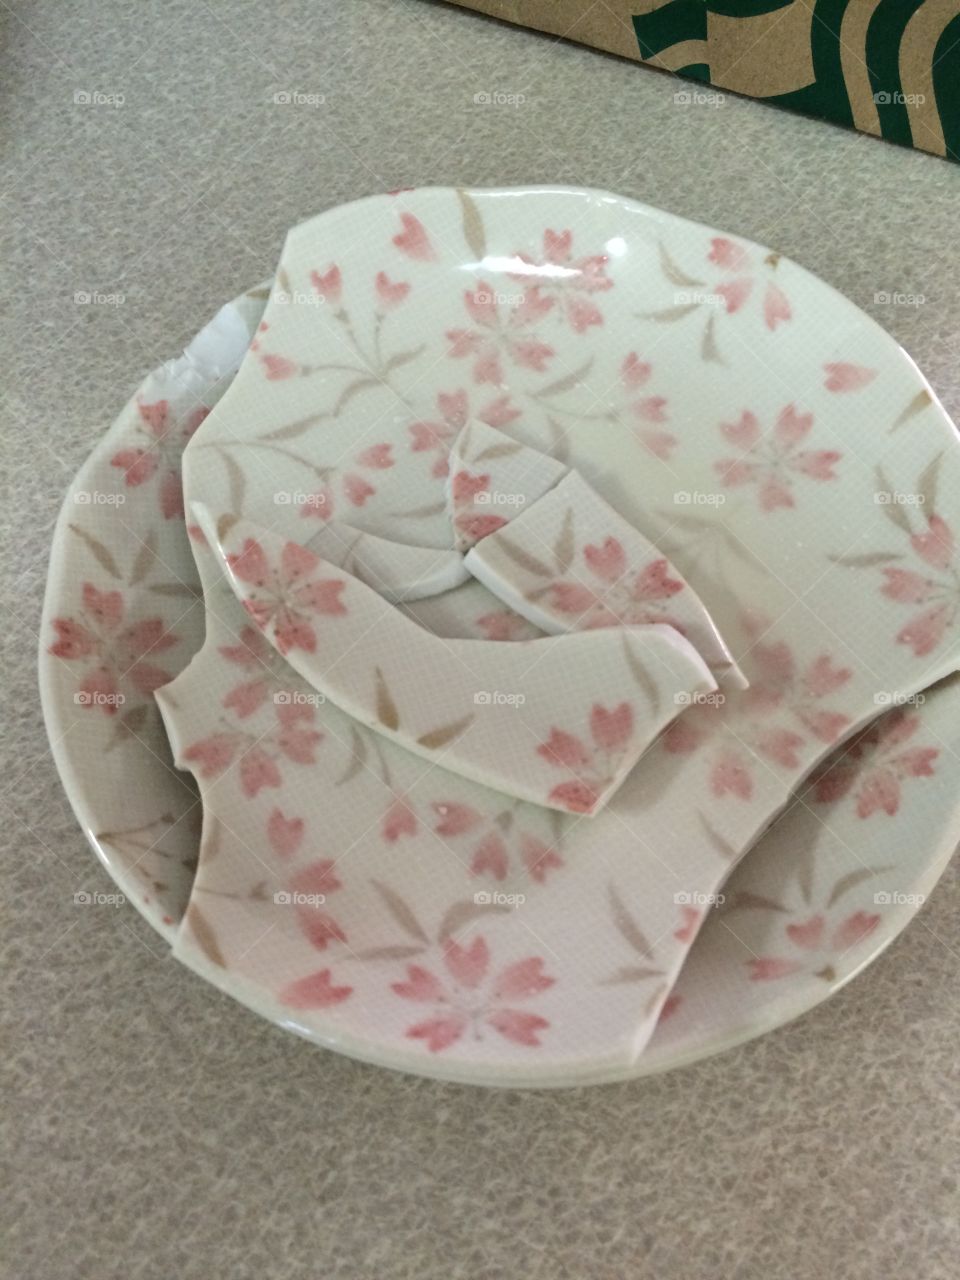 Broken Memories. Two of my plates from Japan got broken.